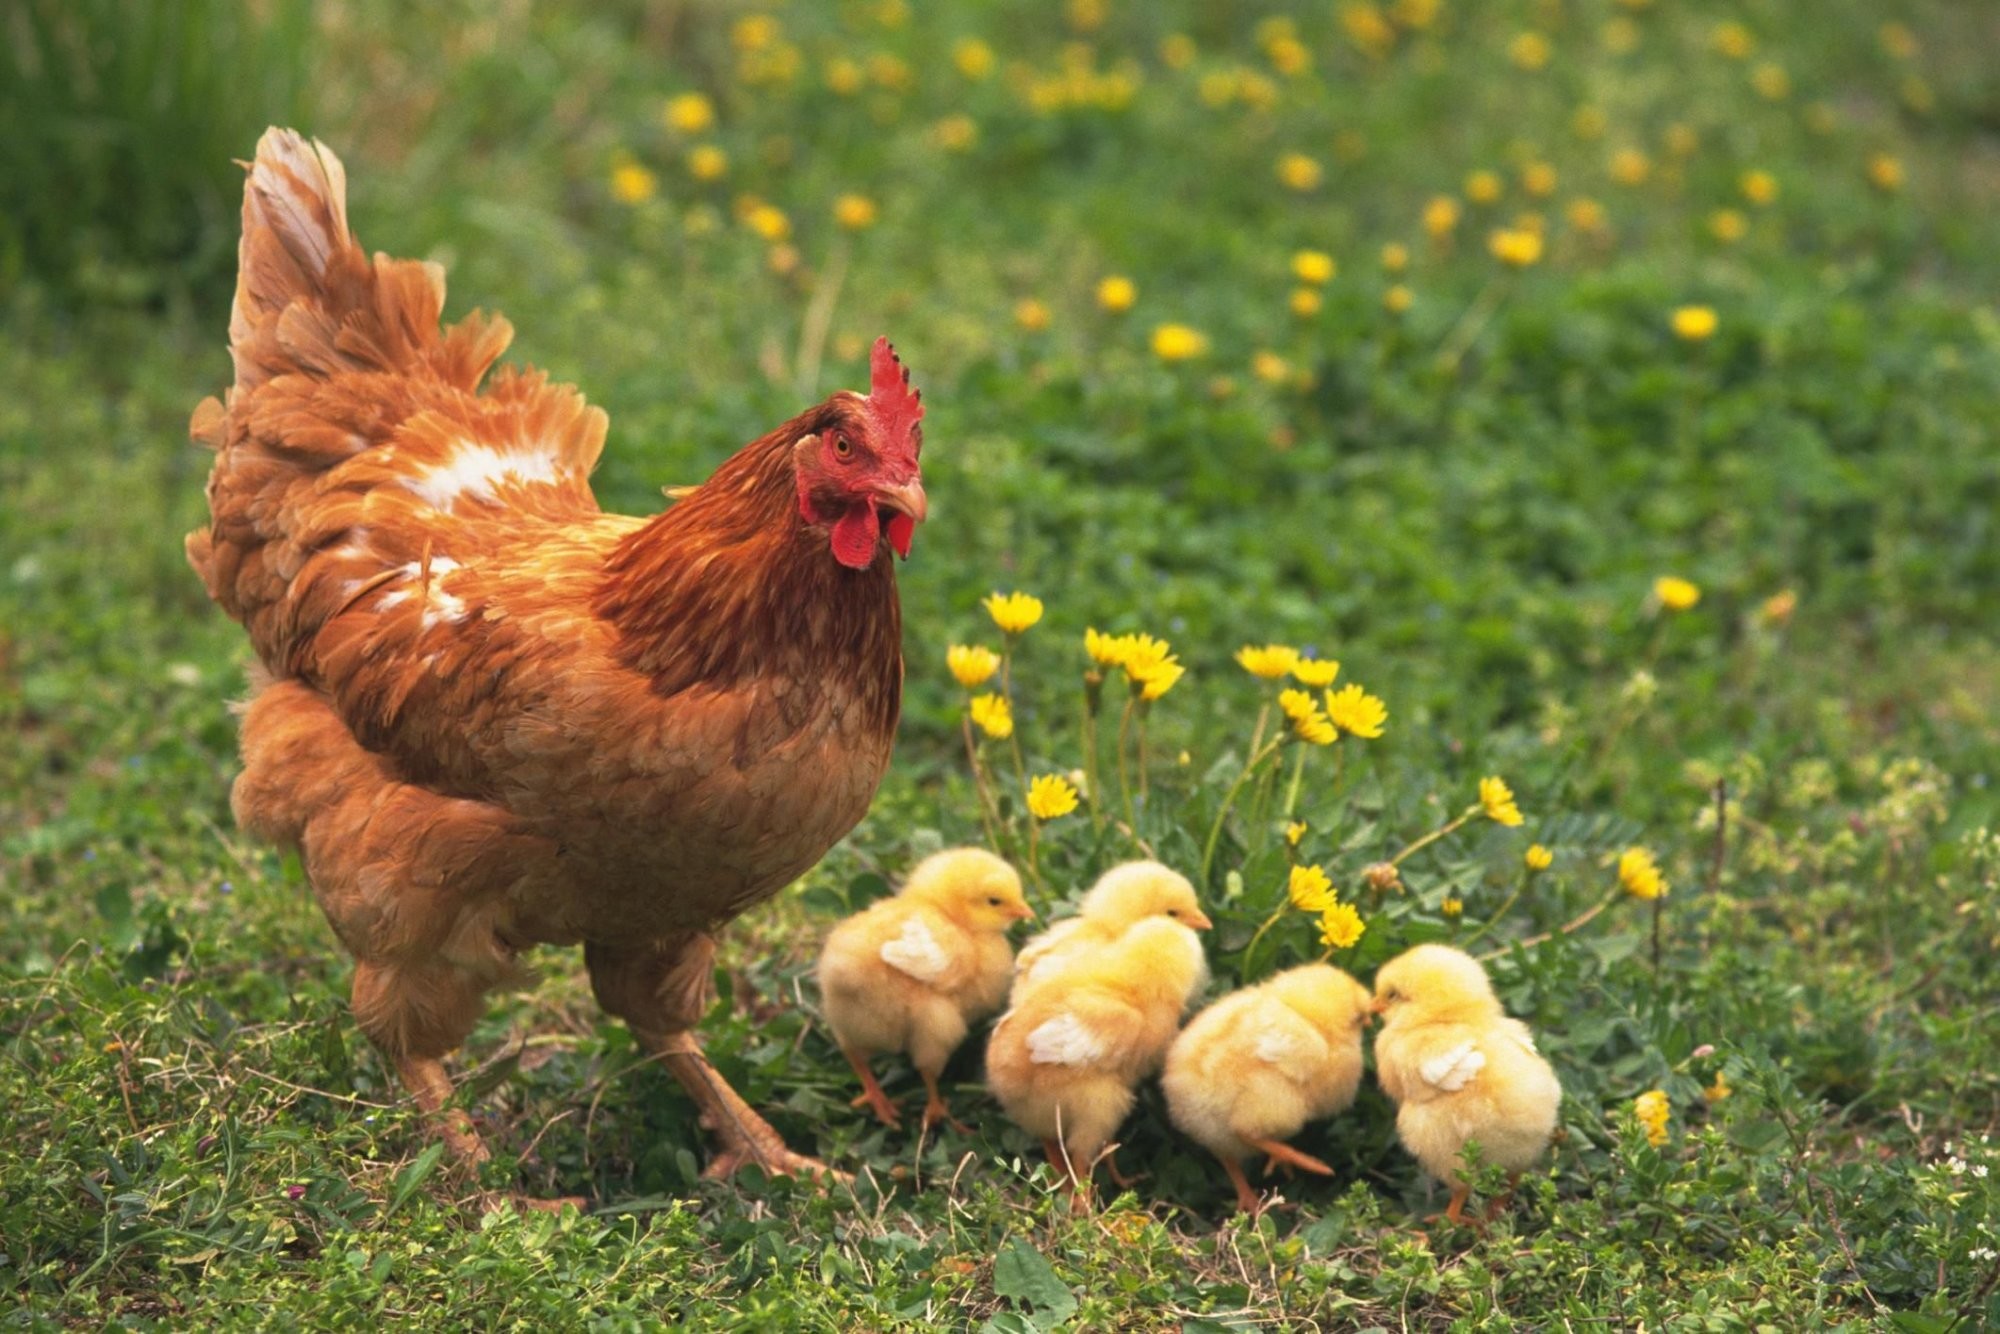 Se pueden comer huevos de gallinas enfermas